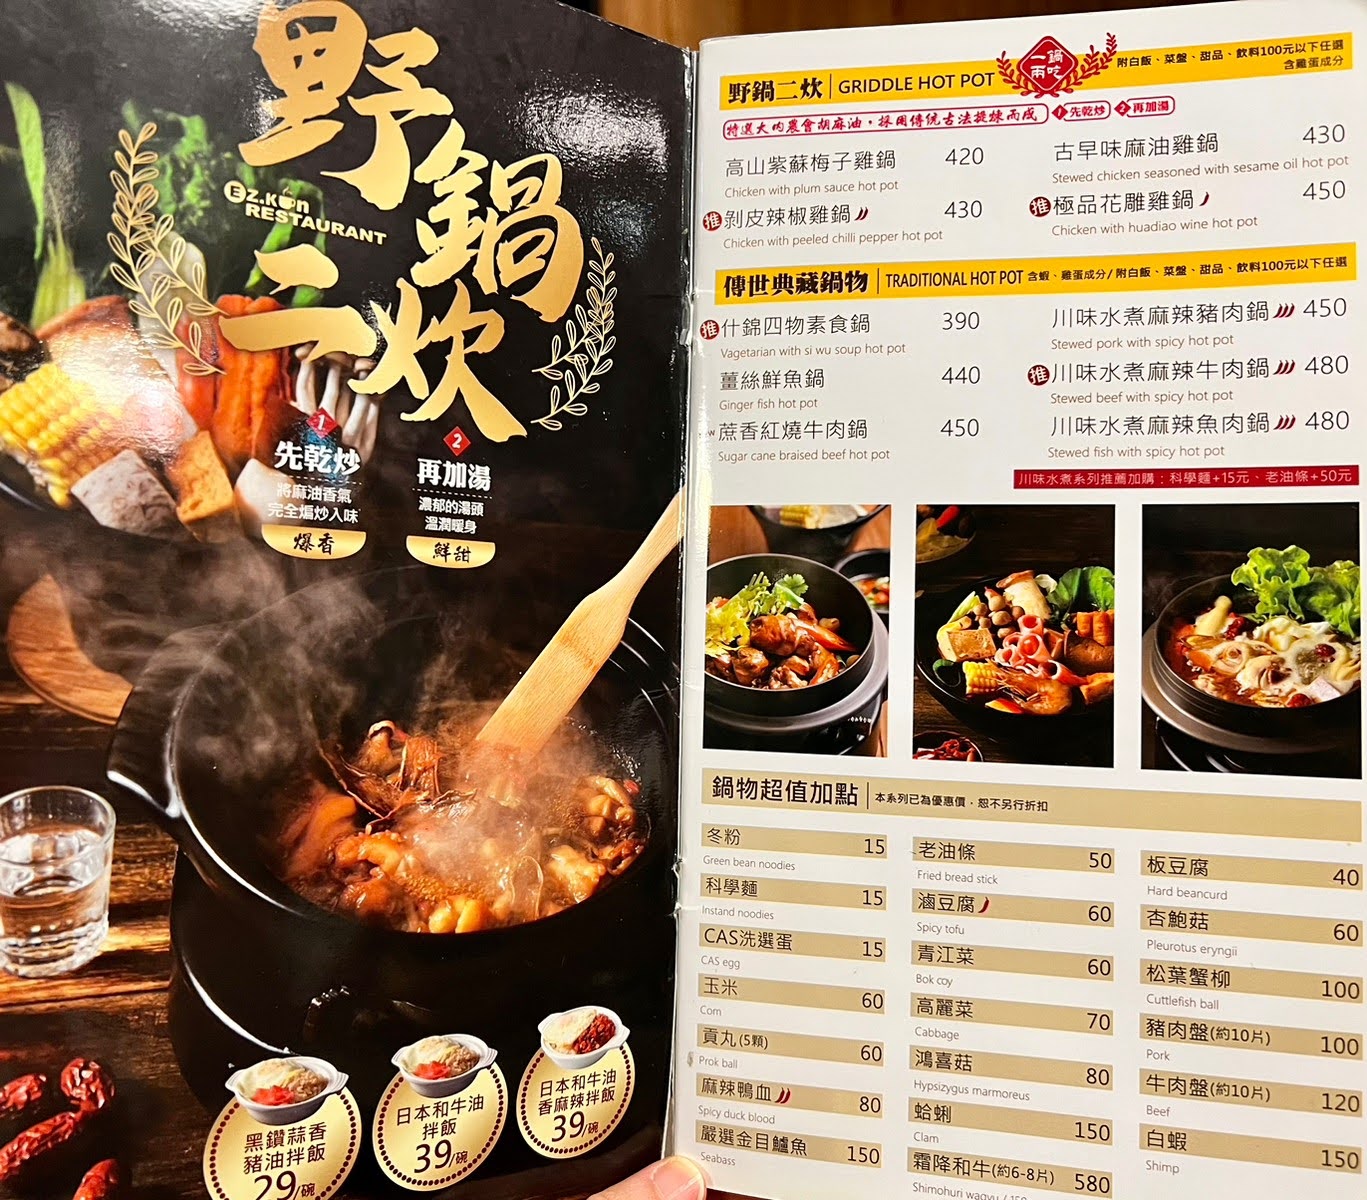 新竹美食推薦 竹北咖啡廳 川菜、韓式料理、拉麵、咖哩飯 聚餐聚會 複合式餐廳